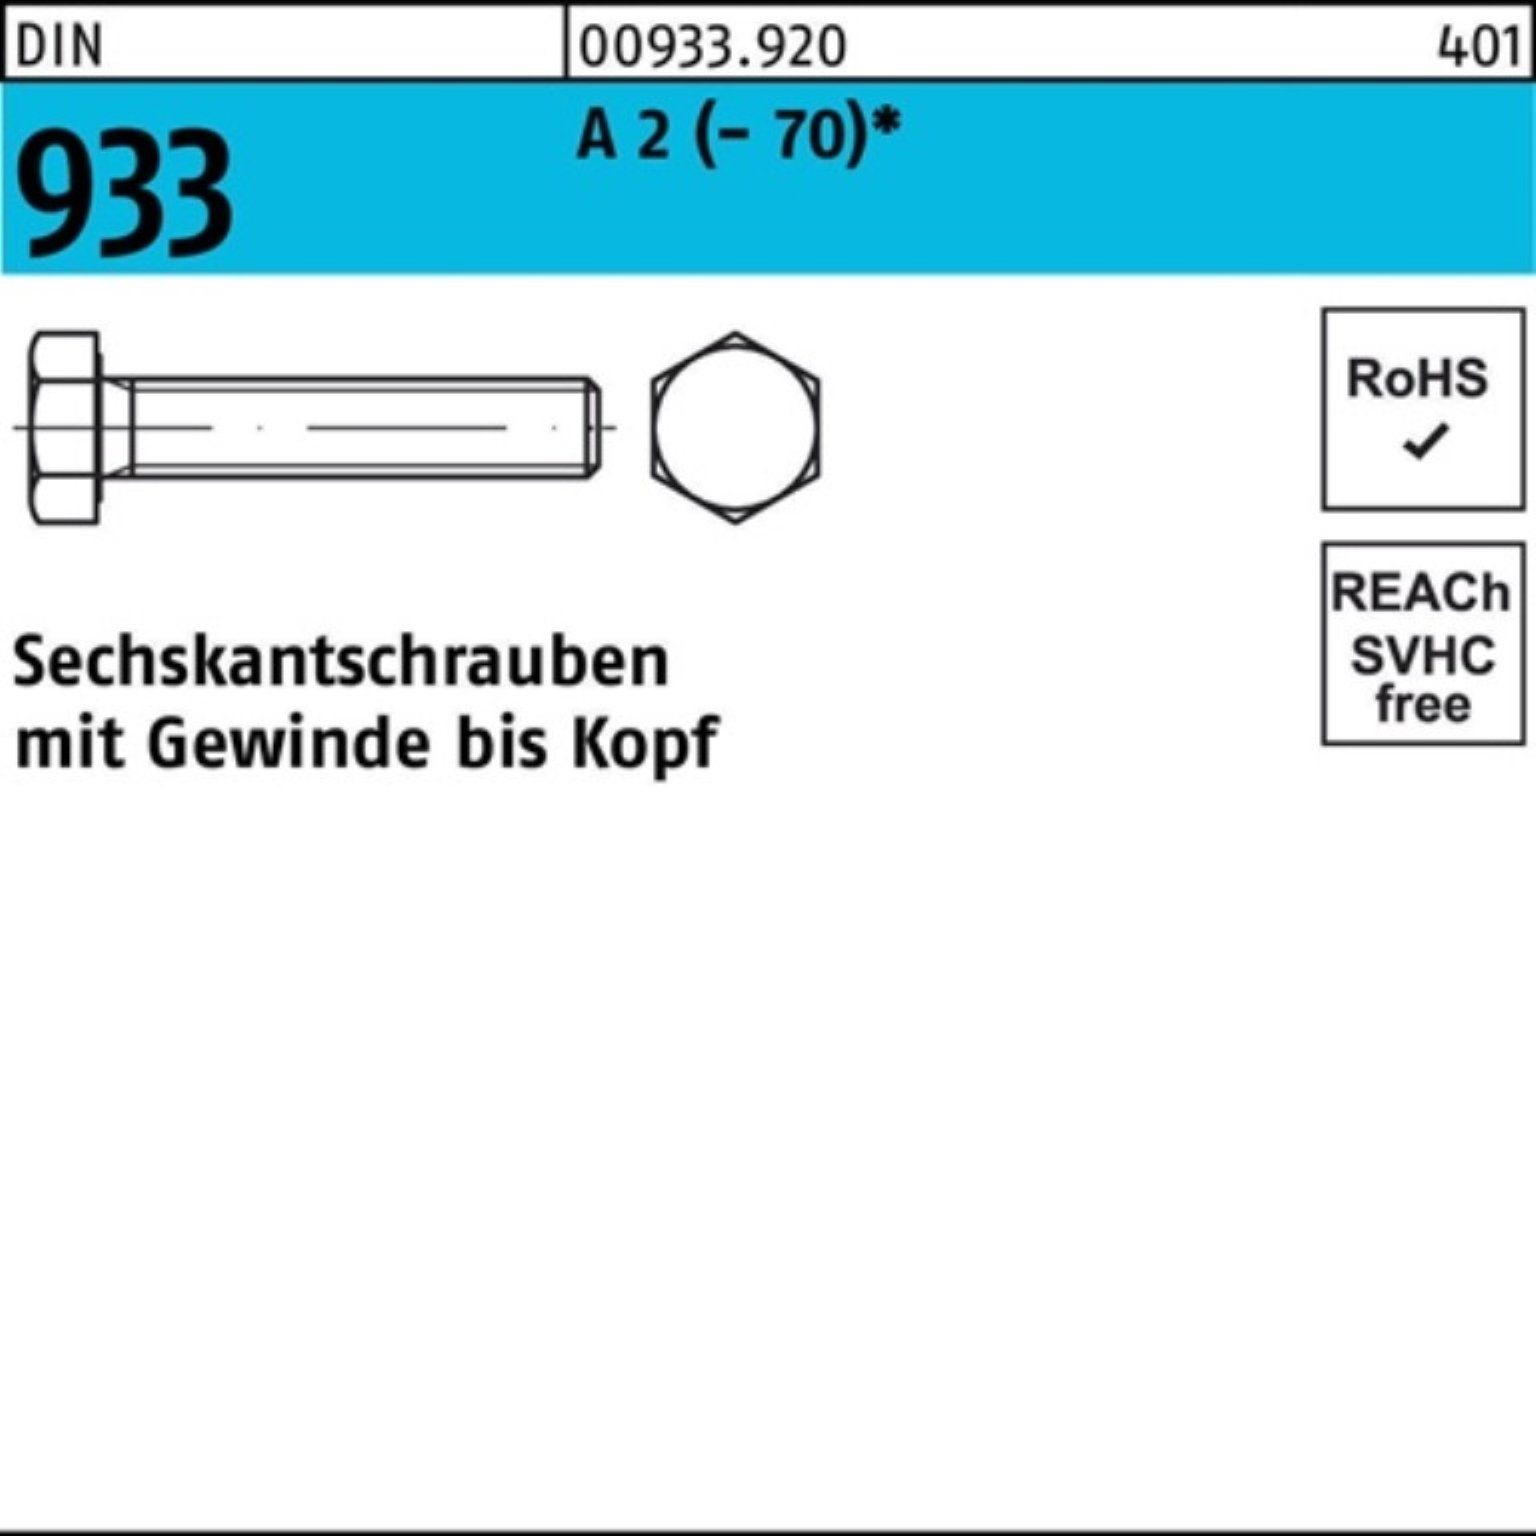 Reyher Sechskantschraube D Sechskantschraube Stück 933 1 100er DIN 100 2 M30x (70) A Pack VG